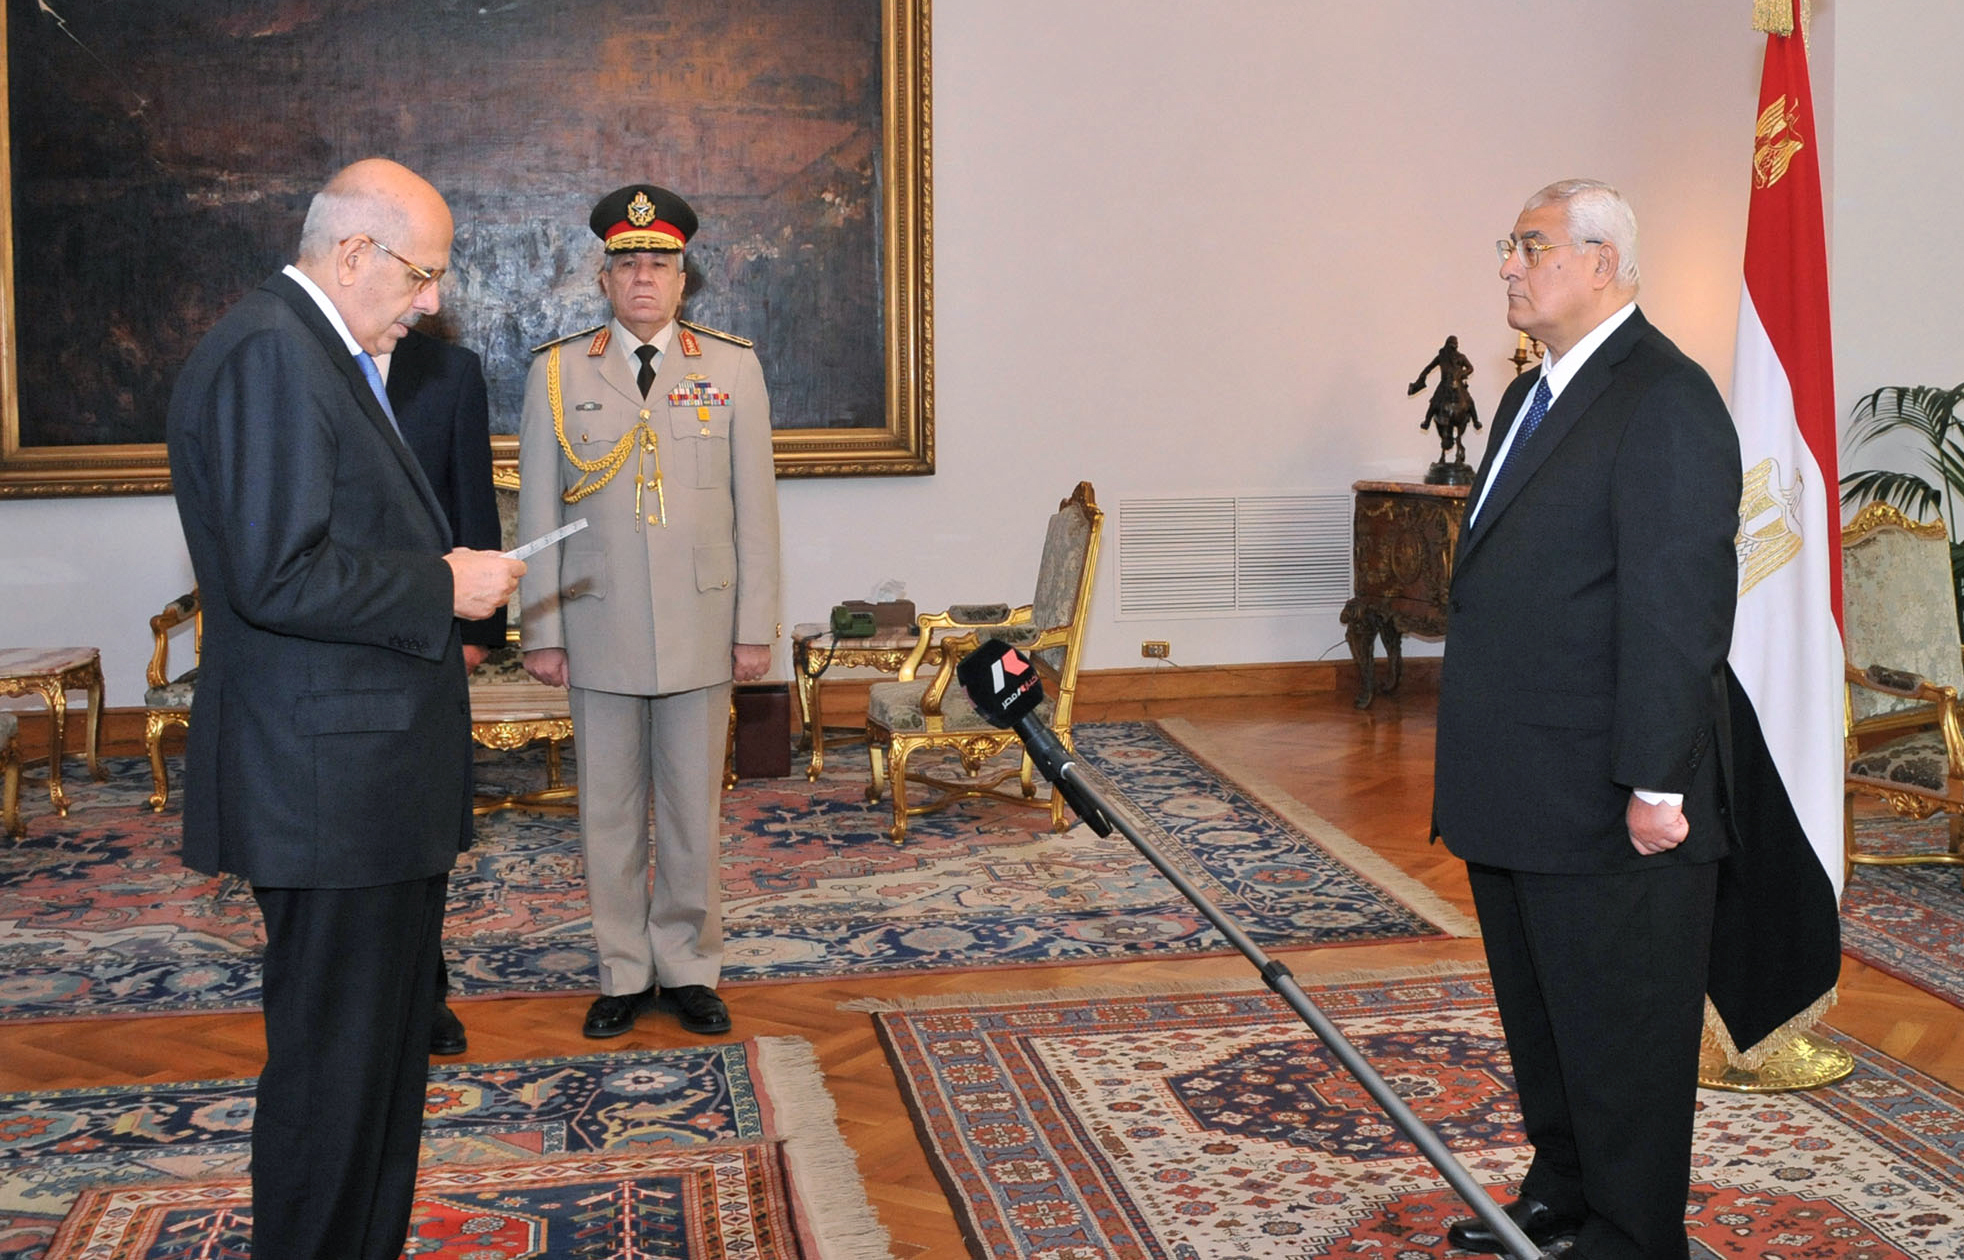 Ο Ελ Μπαραντέι ορκίστηκε αντιπρόεδρος της Αιγύπτου